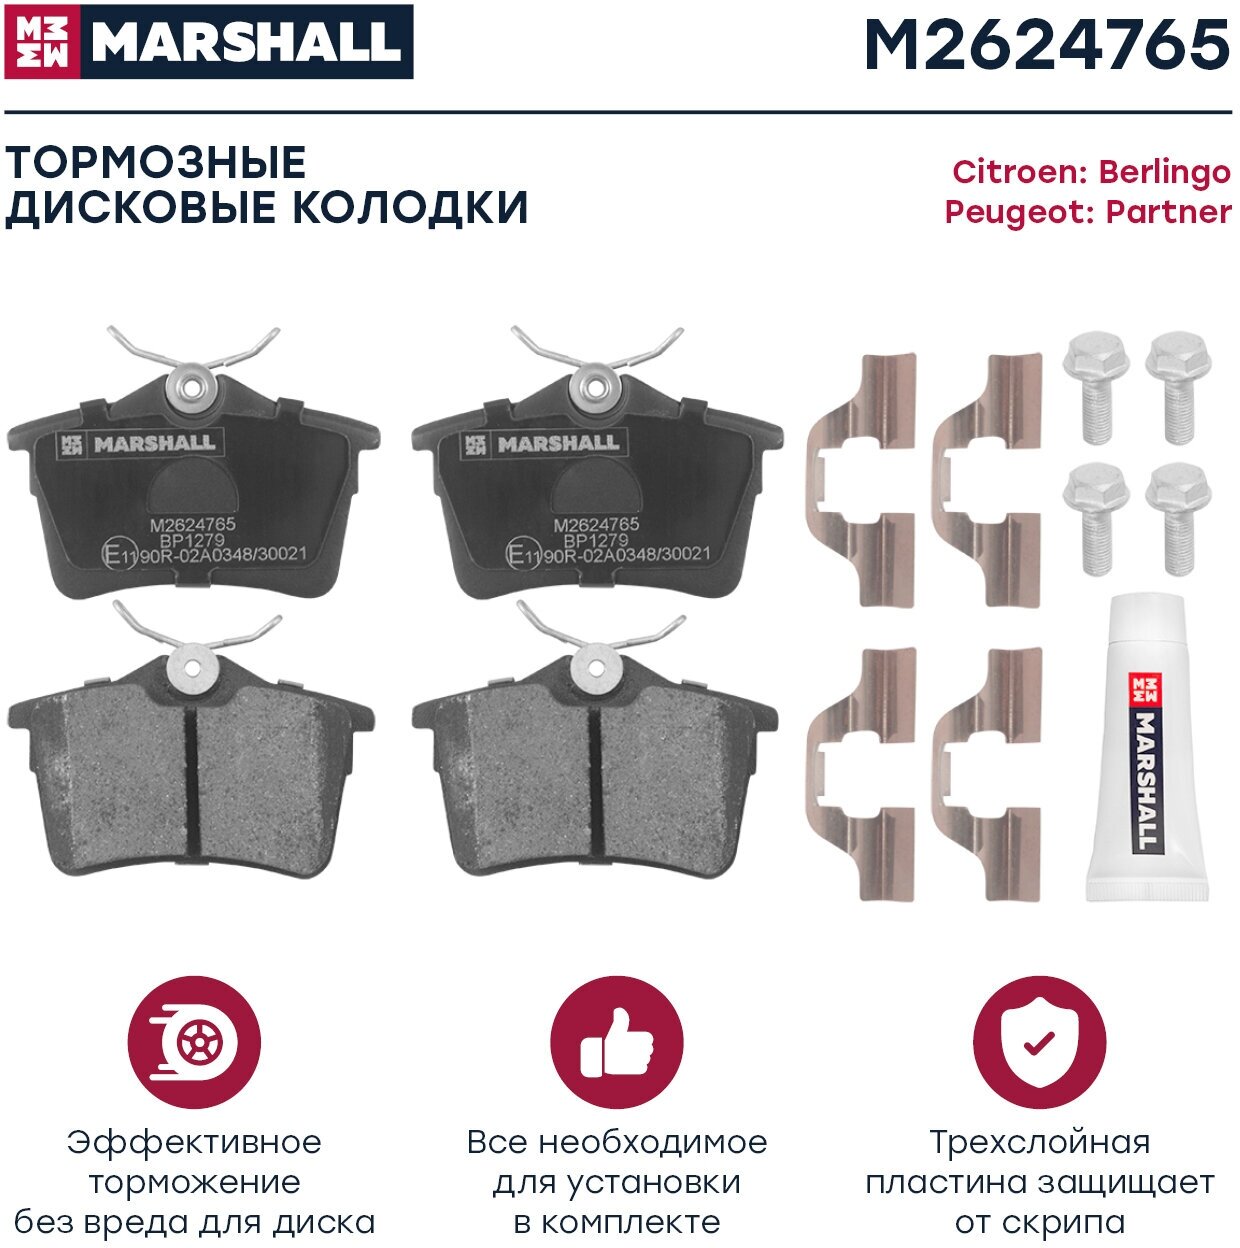 Дисковые тормозные колодки задние Marshall M2624765 для Citroen Berlingo Peugeot Partner Peugeot 308 Great Wall Safe (4 шт.)